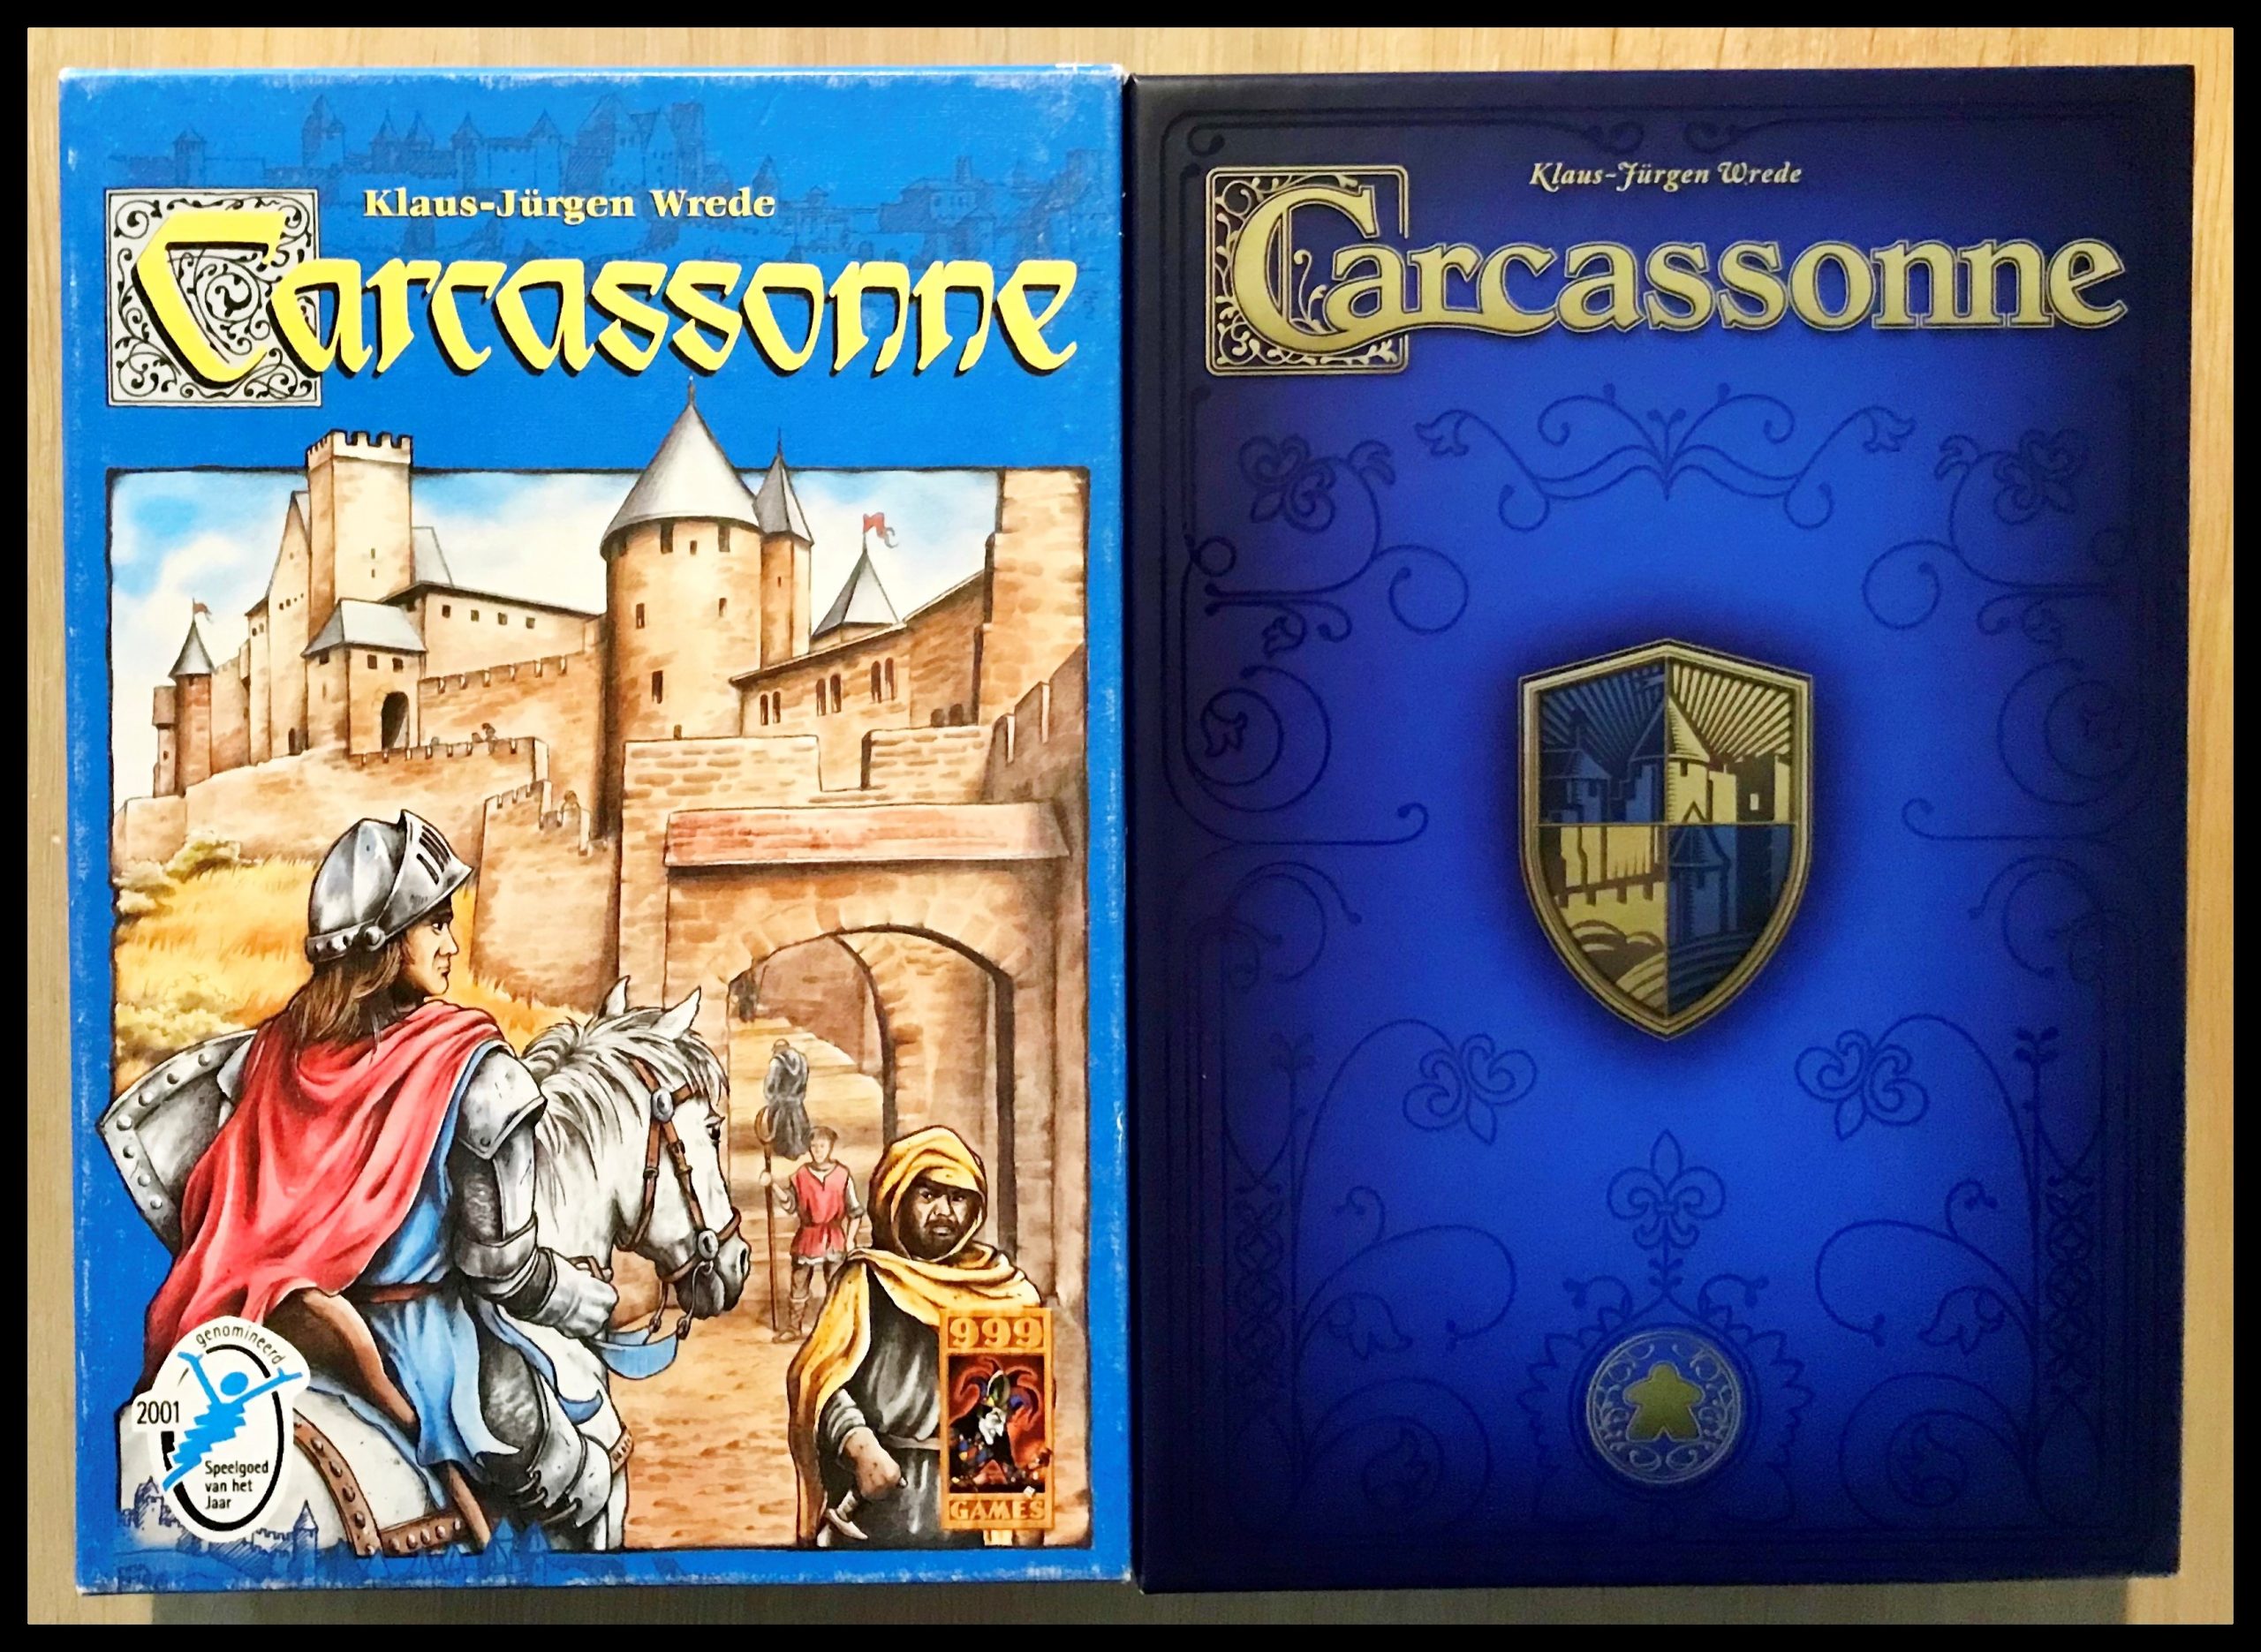 mei worst Bijlage Carcassonne: de 20-jaar jubileumeditie vs het origineel uit 2000 –  Spellengek